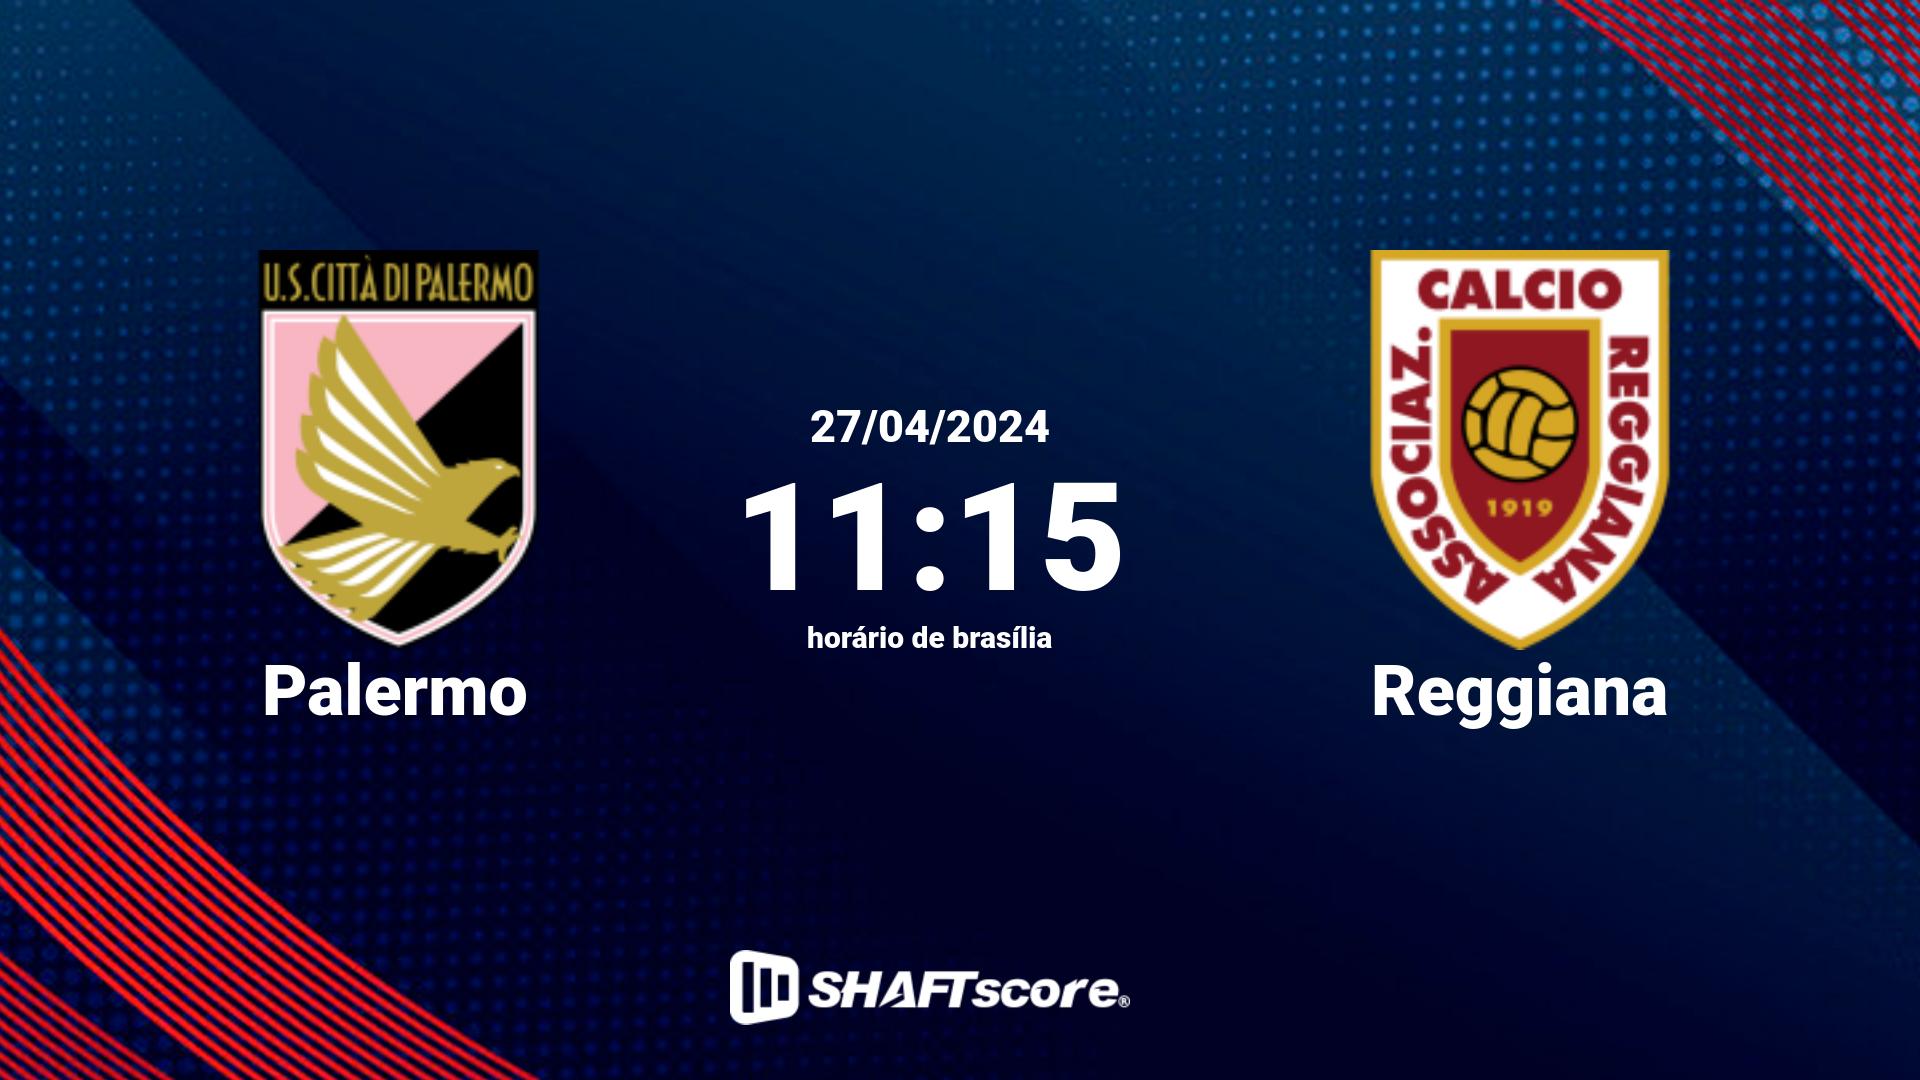 Estatísticas do jogo Palermo vs Reggiana 27.04 11:15